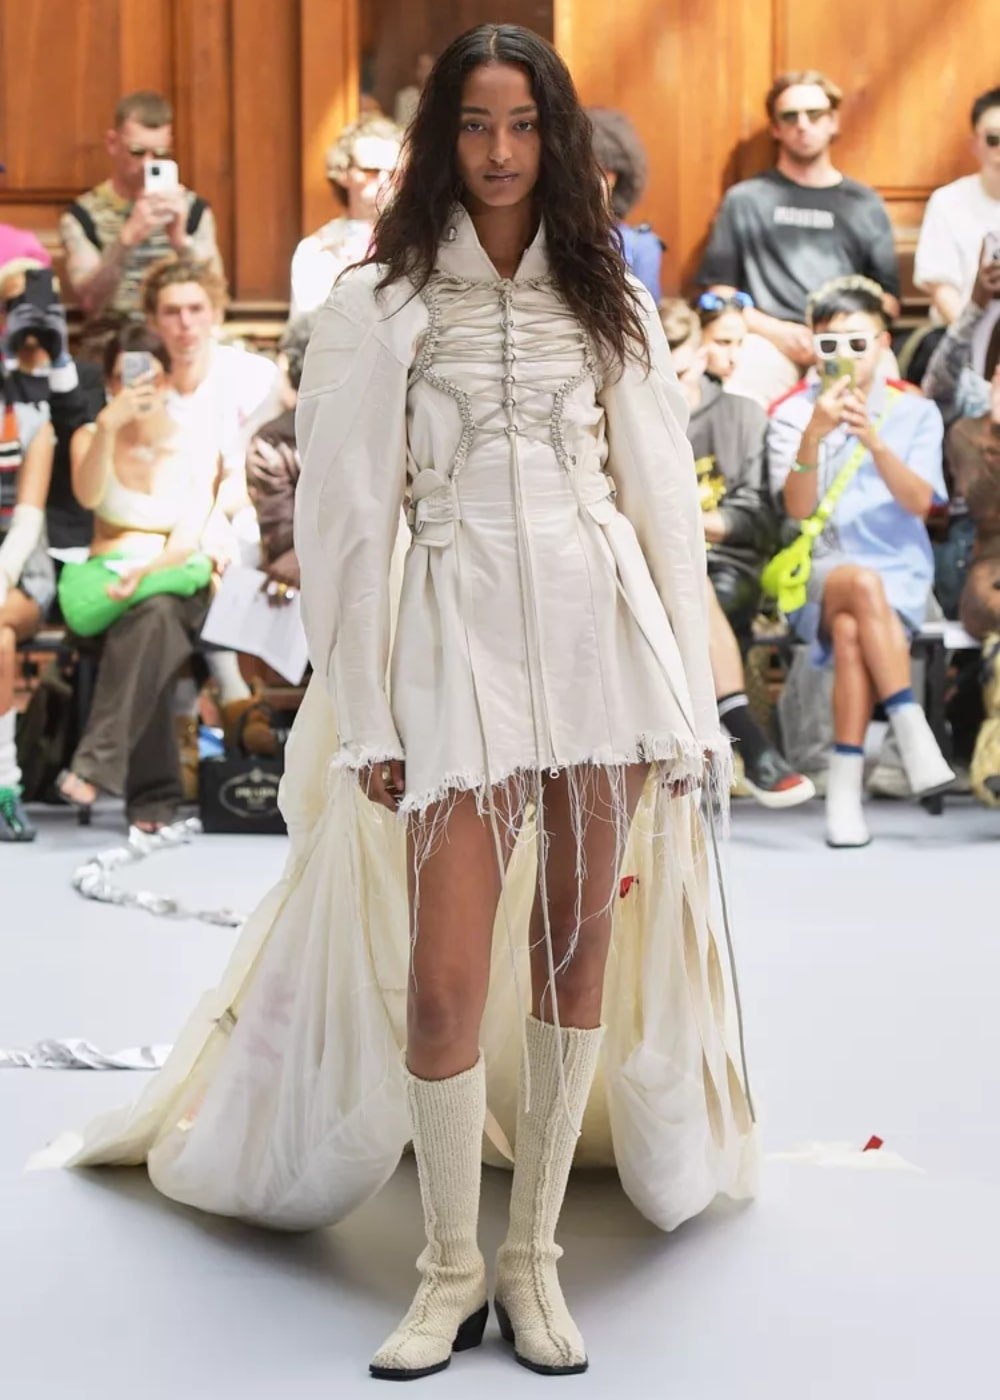 Holzweiler - roupa off-white com saia desfiada, botas e camisa de manga longa - semana de moda de Copenhagen - Primavera - modelo andando pela passarela - https://stealthelook.com.br